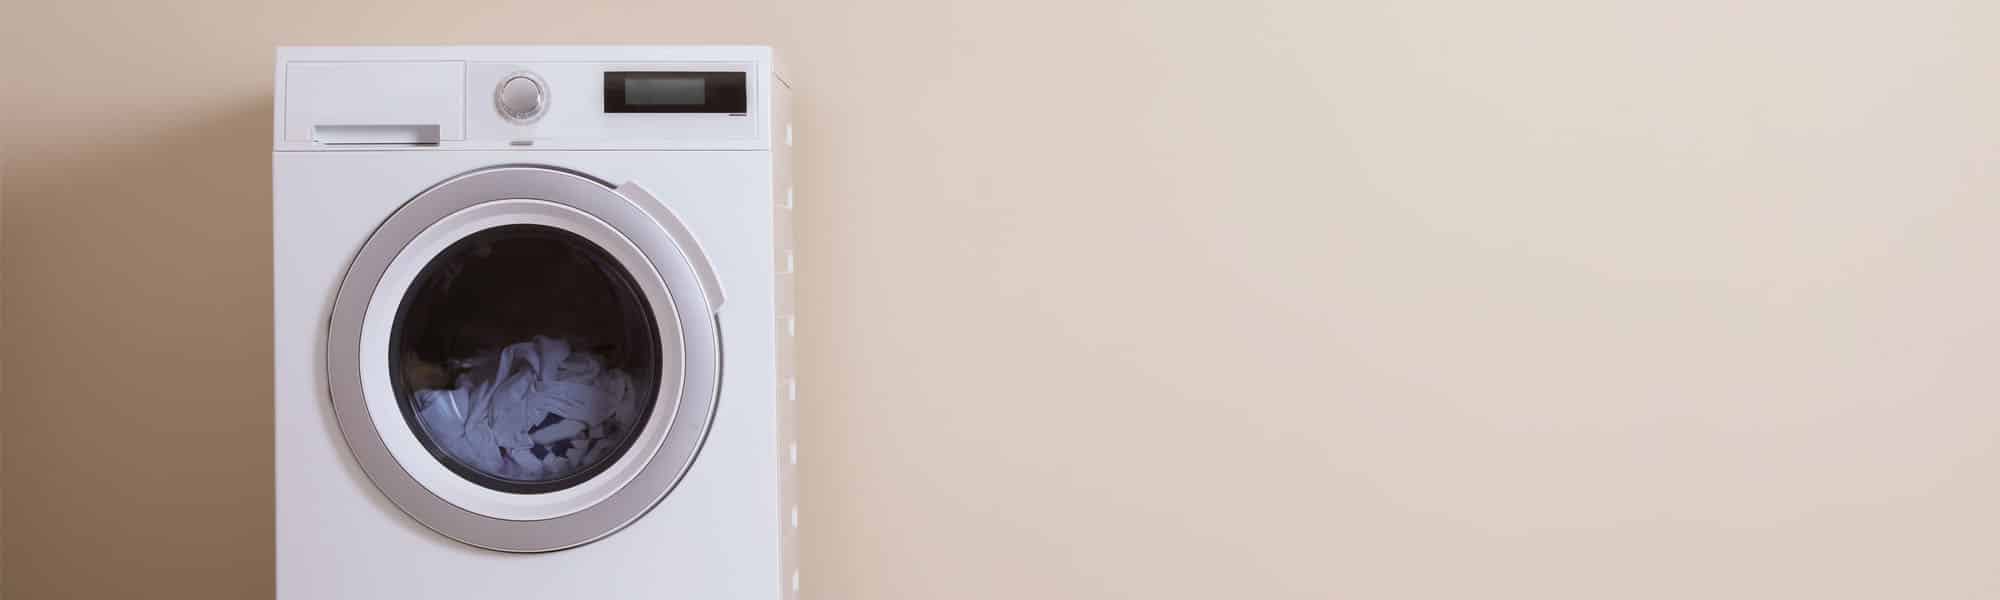 Waschmaschine entsorgen Tipps